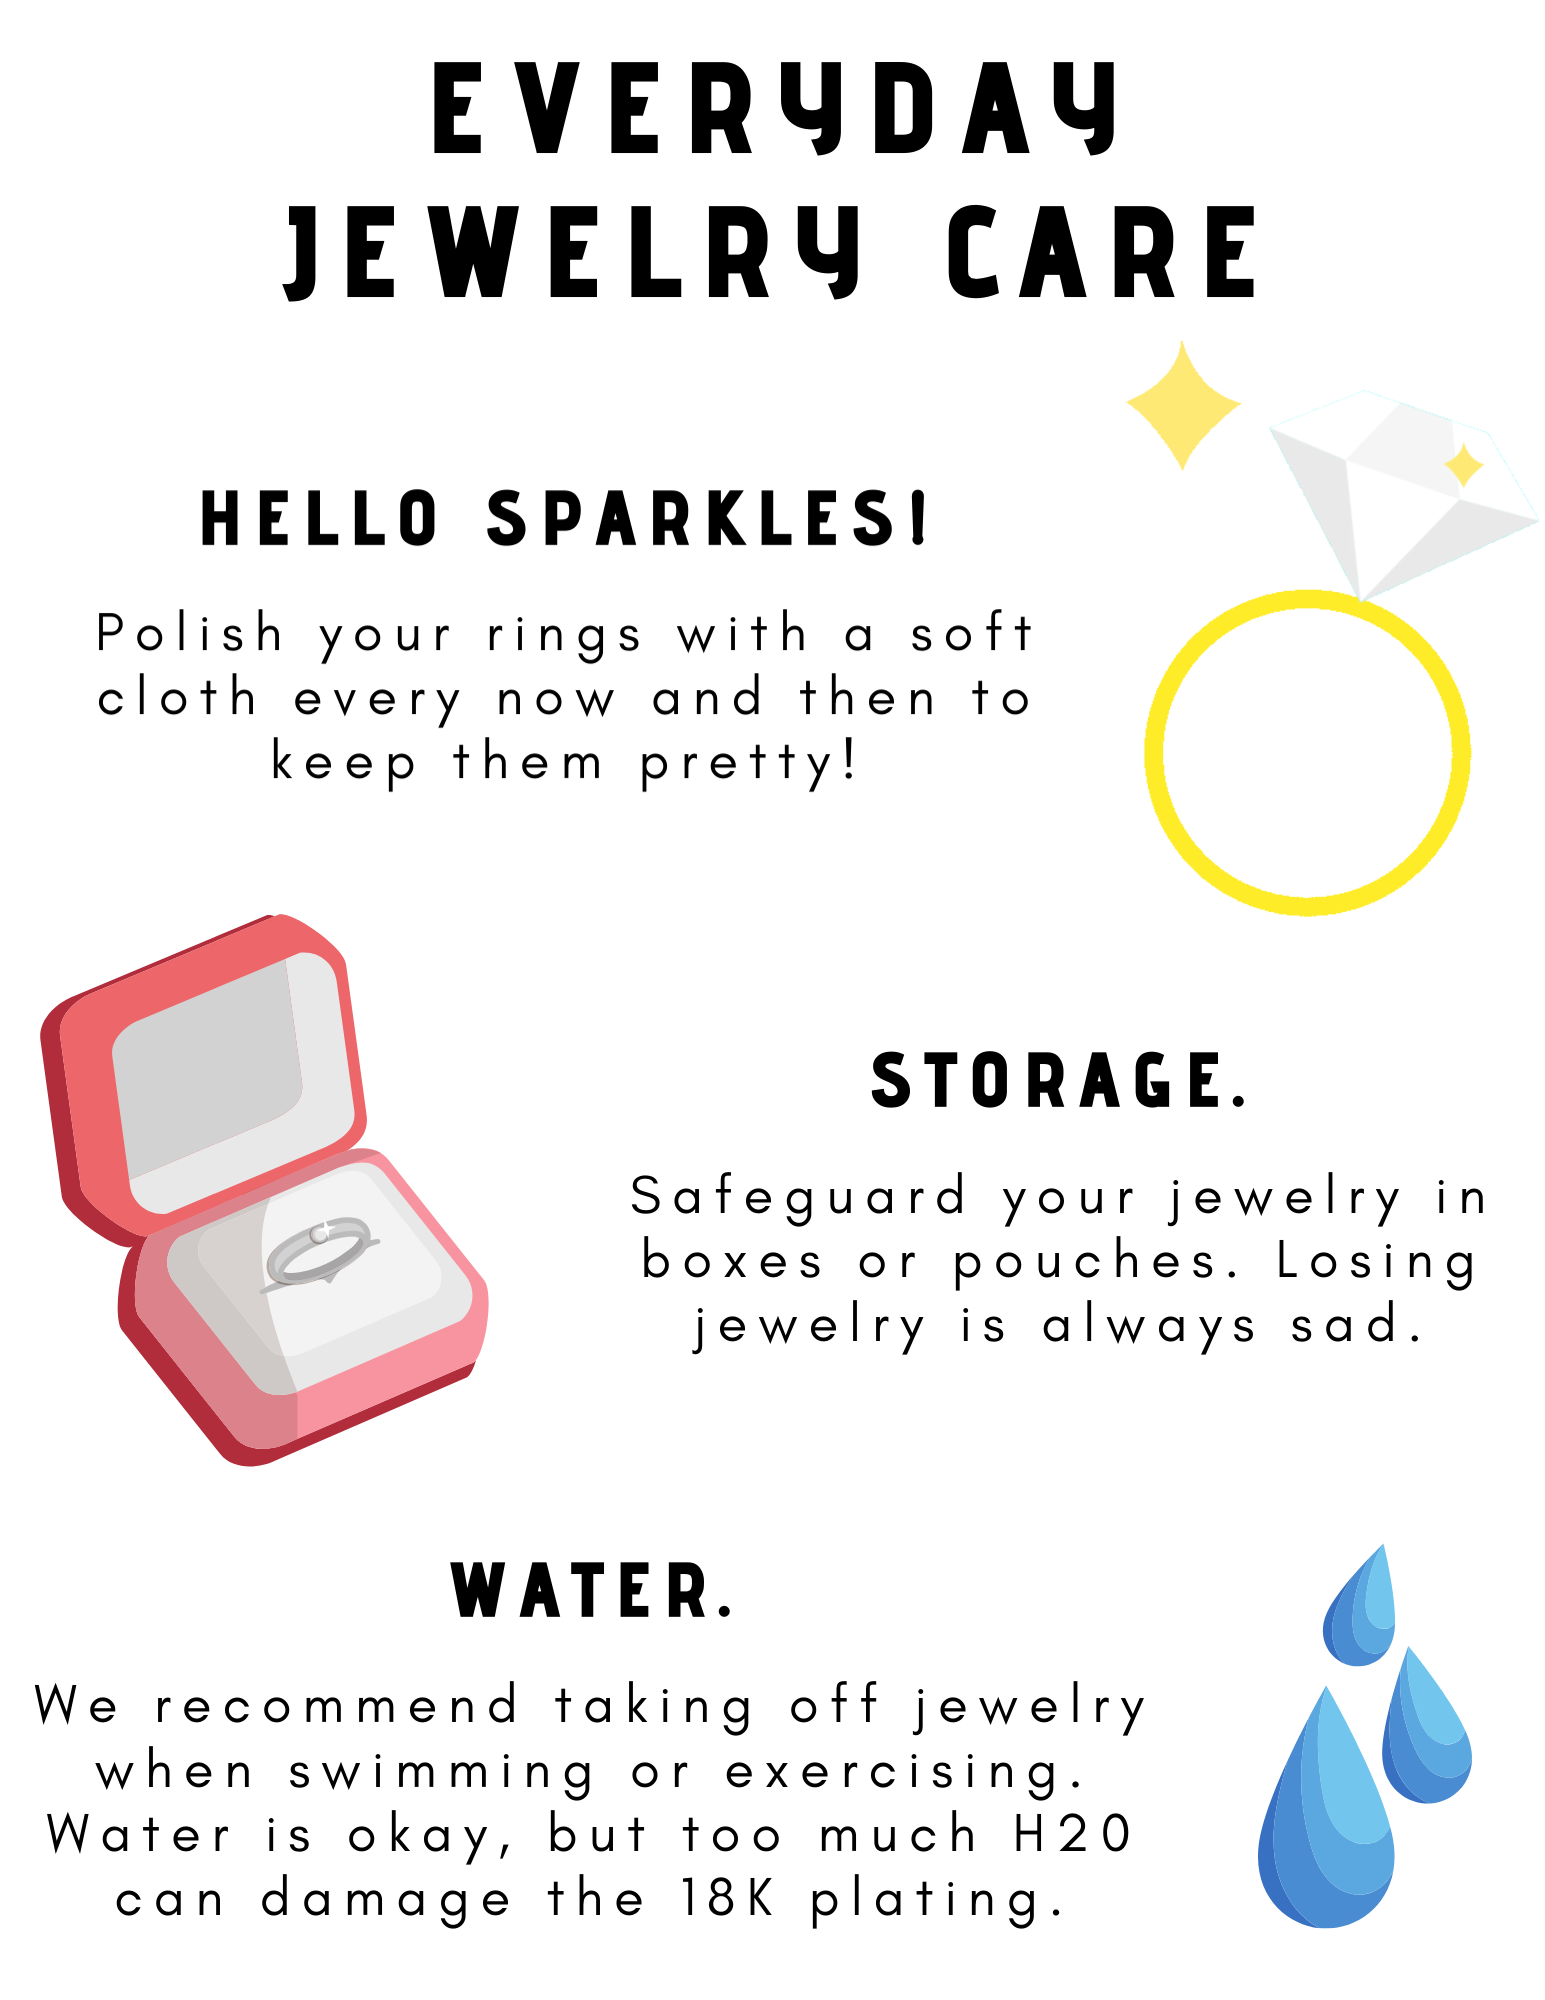 Jewelry Care 101 – NOW Jewelry